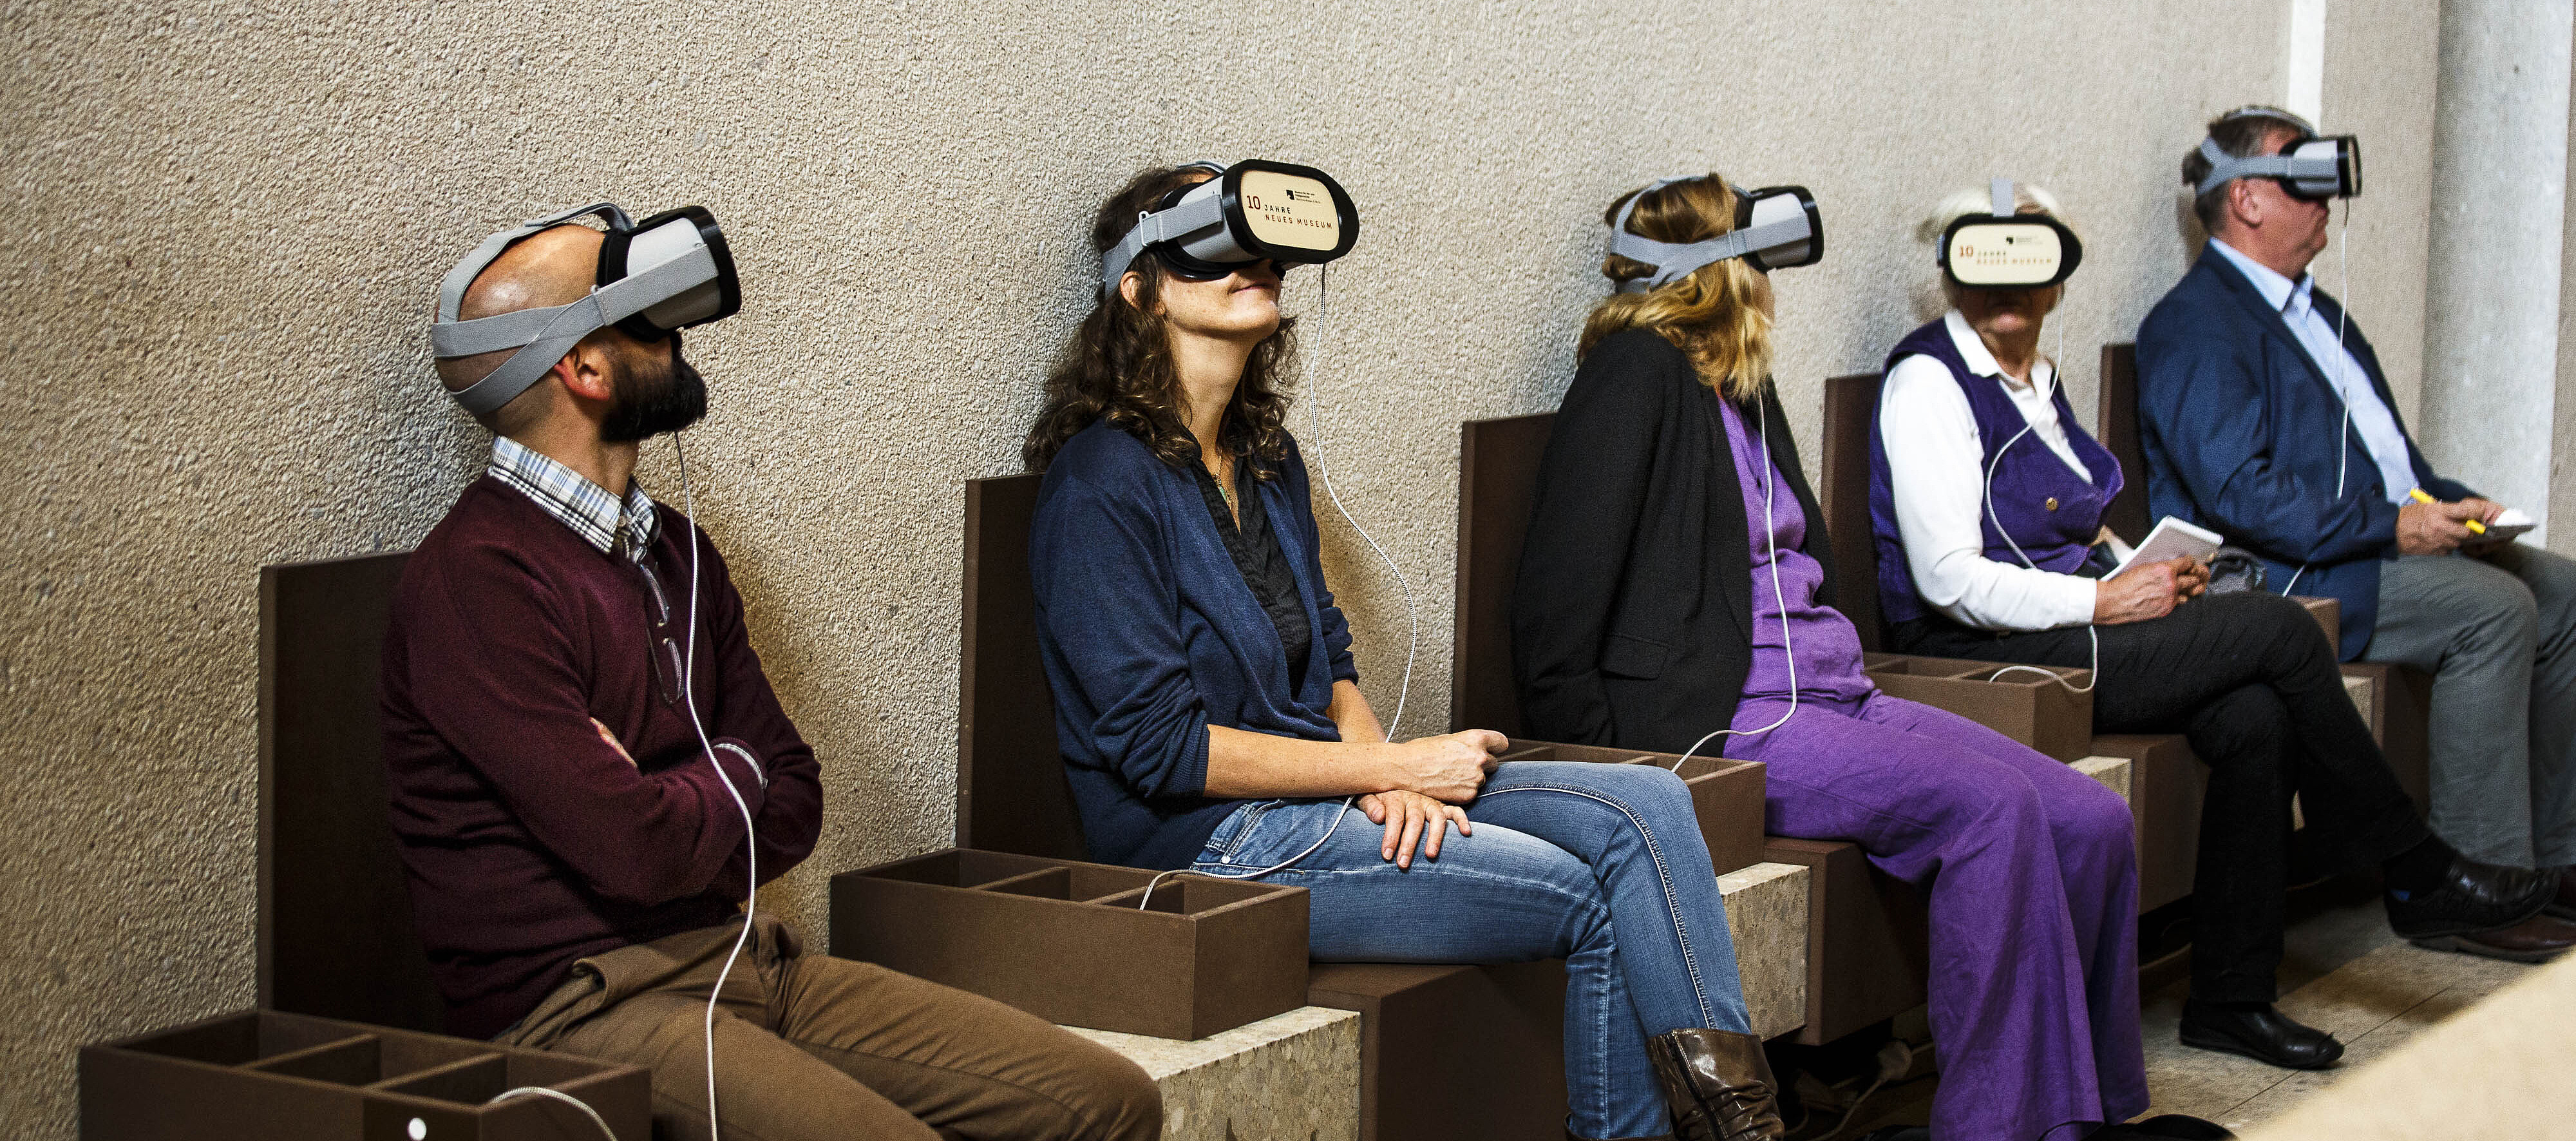 Fünf Personen unterschiedlichen Geschlechts und Alters mit Virtual-Reality-Headsets sitzen nebeneinander auf einer Bank in einem Raum